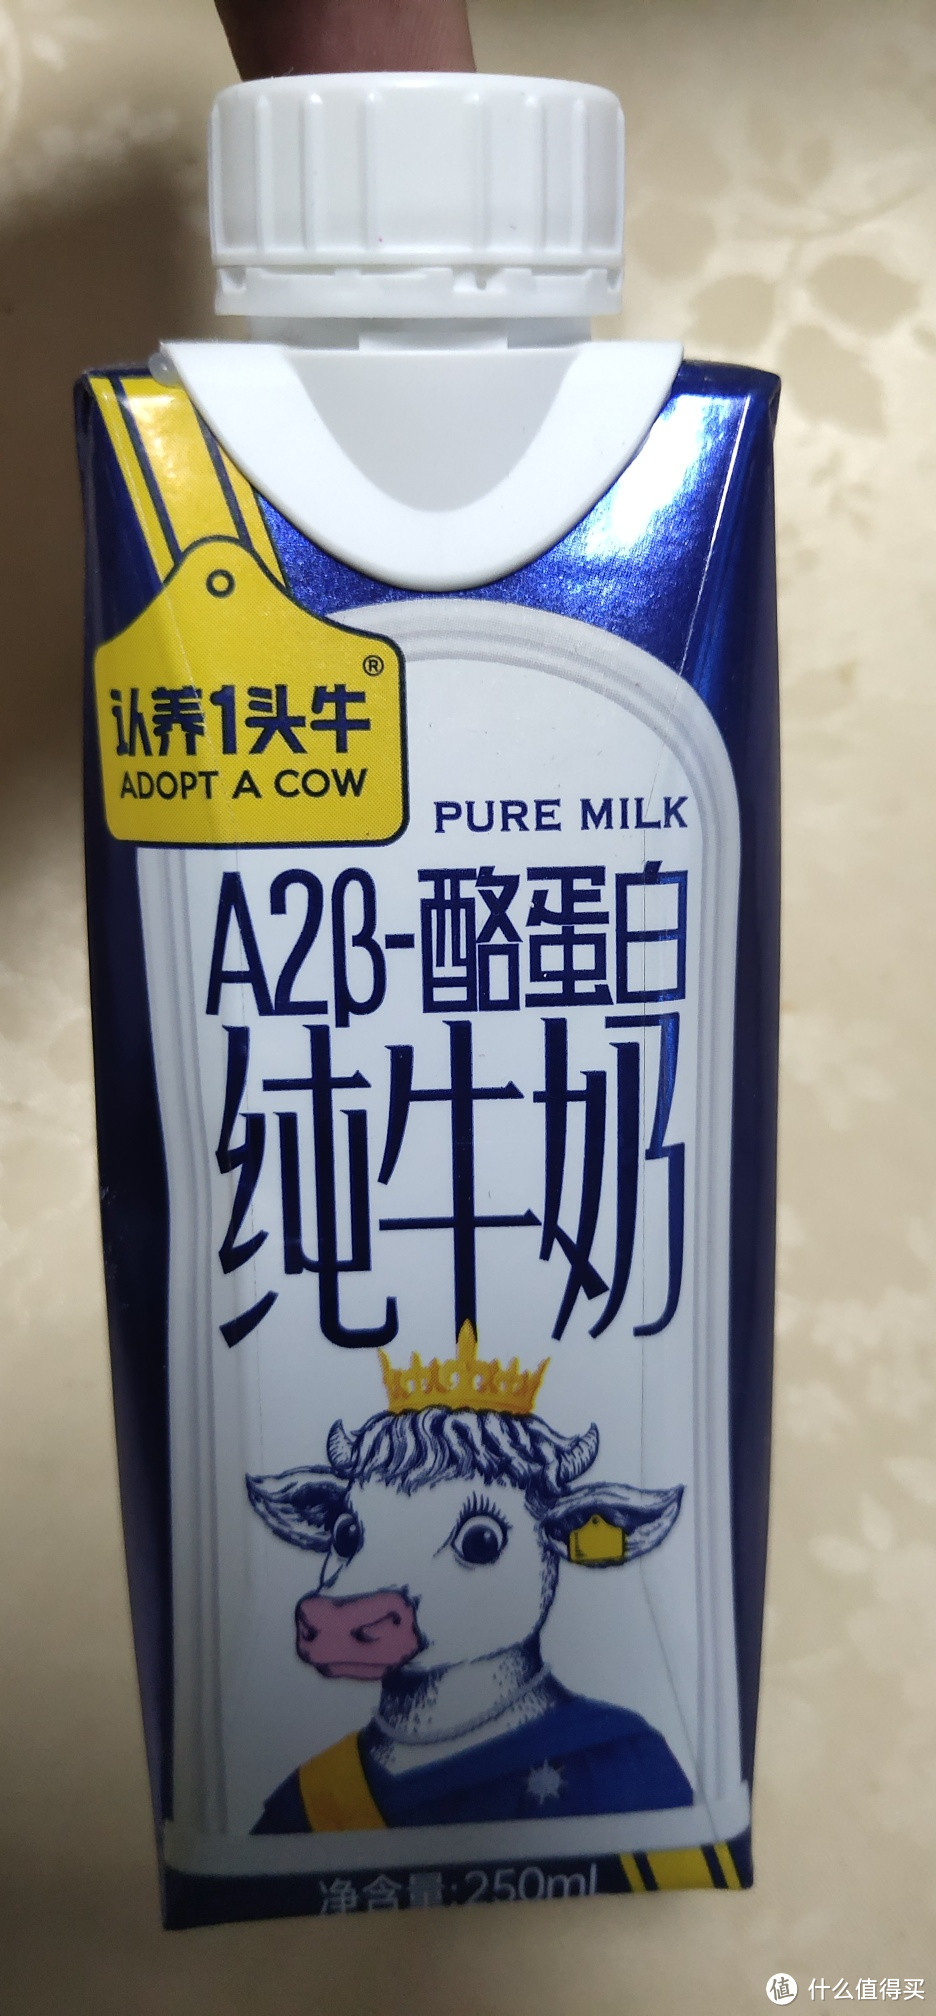 认养一头牛的A2β-酪蛋白牛奶